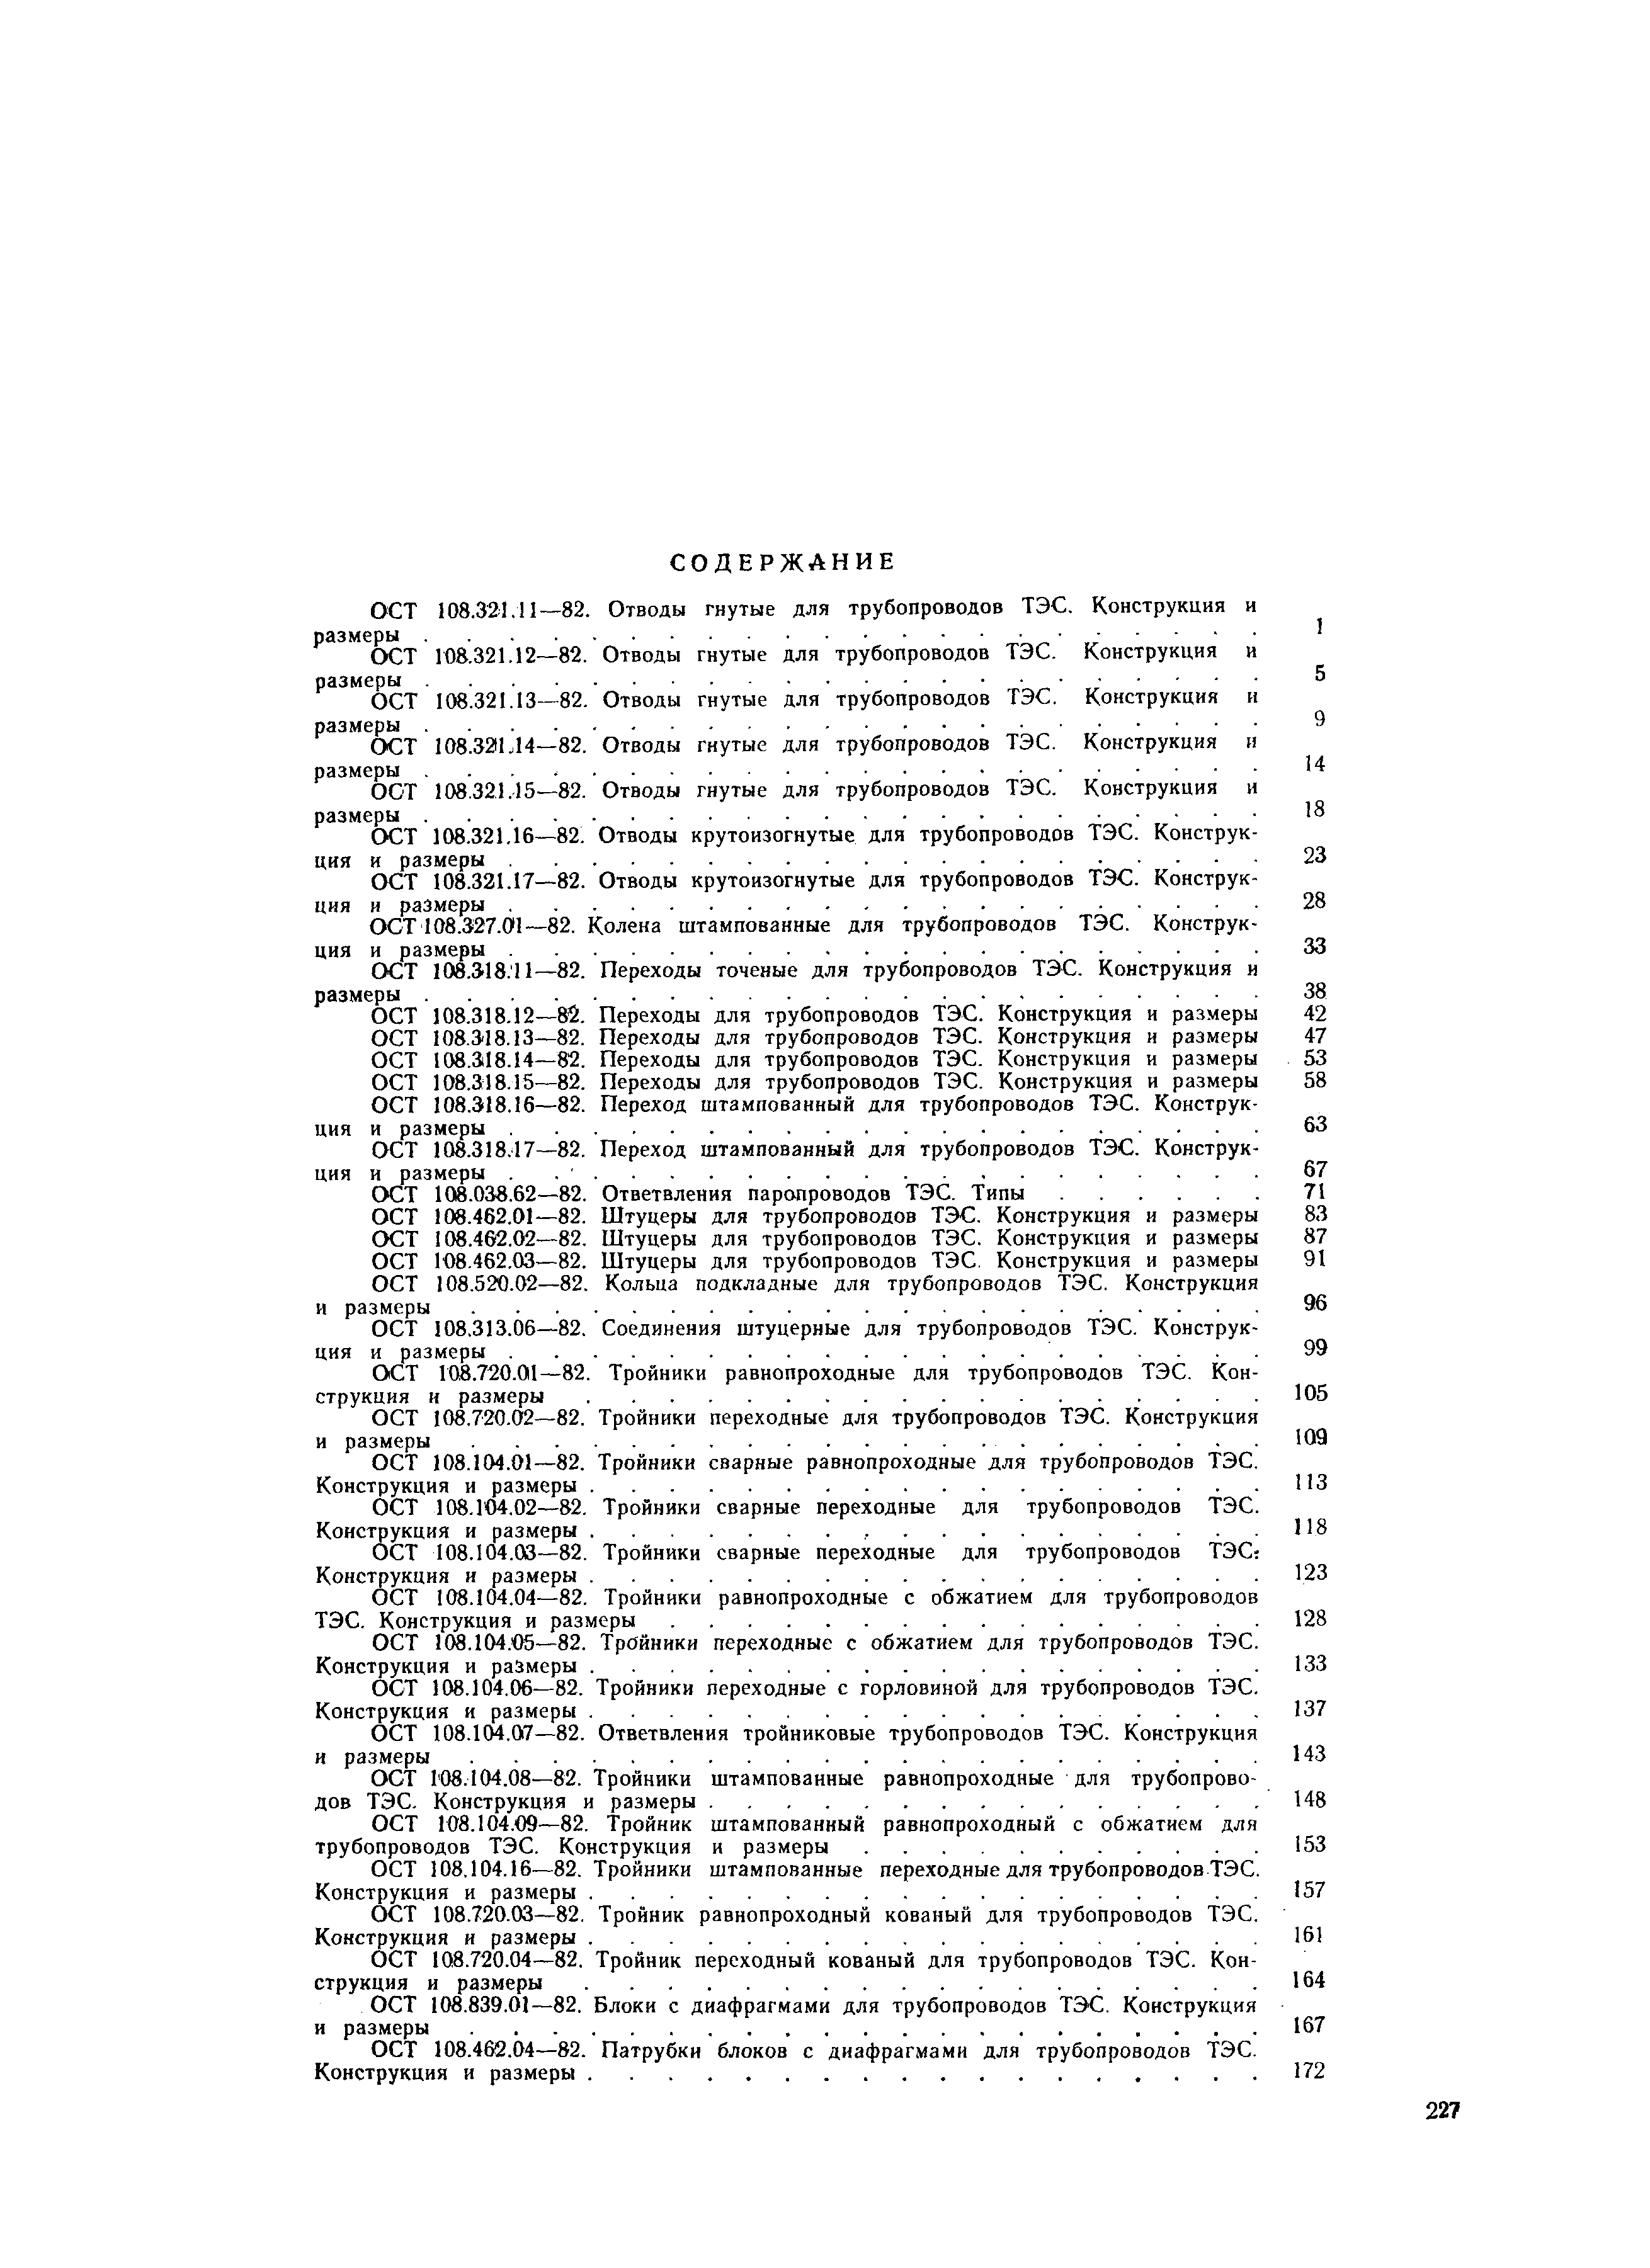 ОСТ 108.321.14-82